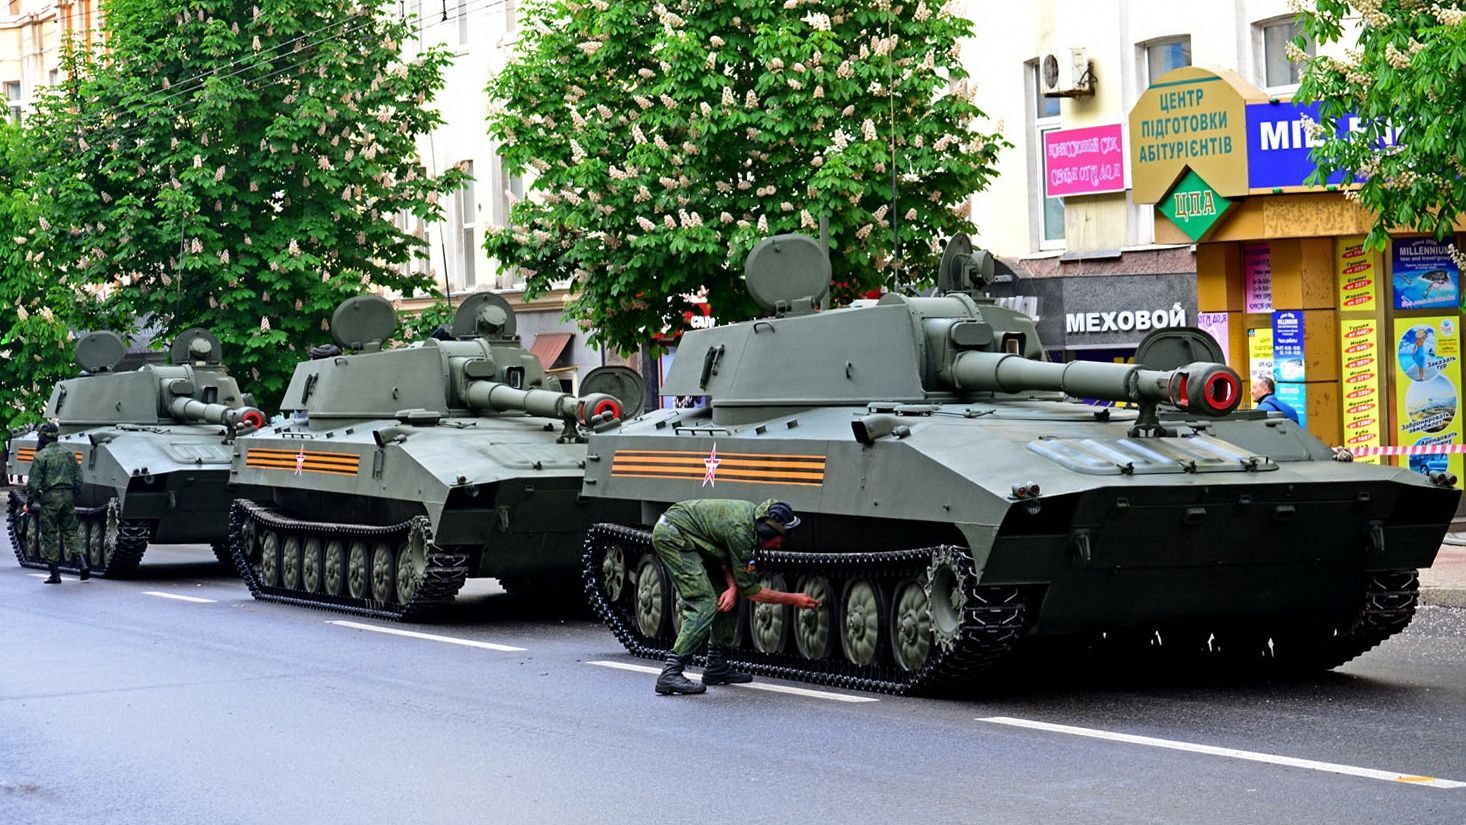 В сети показали множество военной техники в оккупированном Донецке